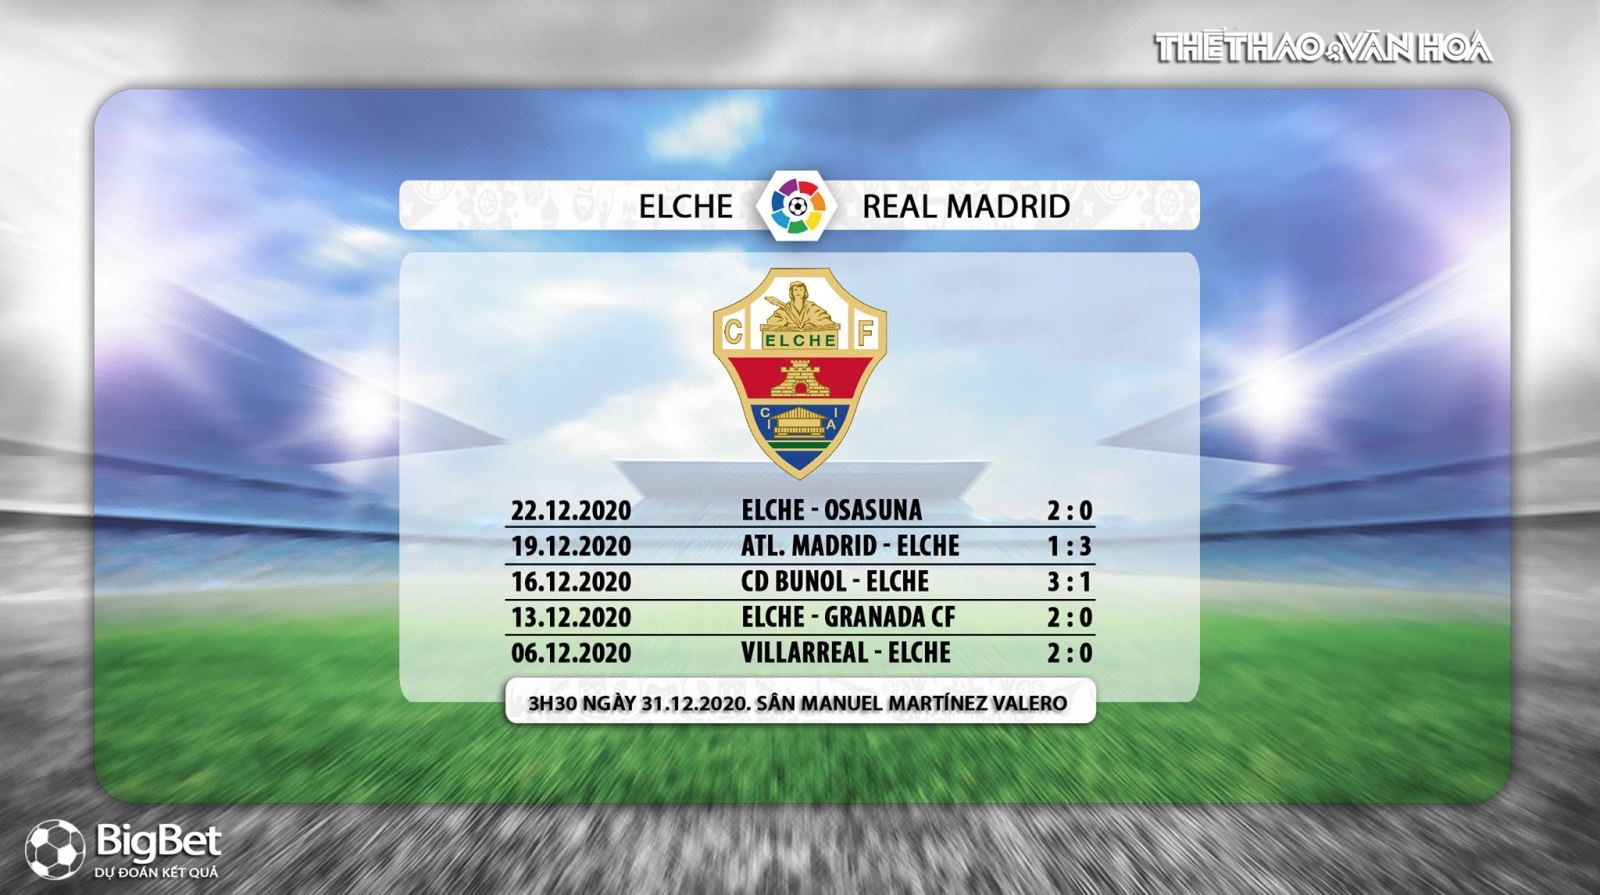 Keo nha cai, Nhận định kết quả, Elche vs Real Madrid, Trực tiếp bóng đá TBN hôm nay, BĐTV, nhận định bóng đá bóng đá Elche đấu với Real Madrid, trực tiếp bóng đá La Liga